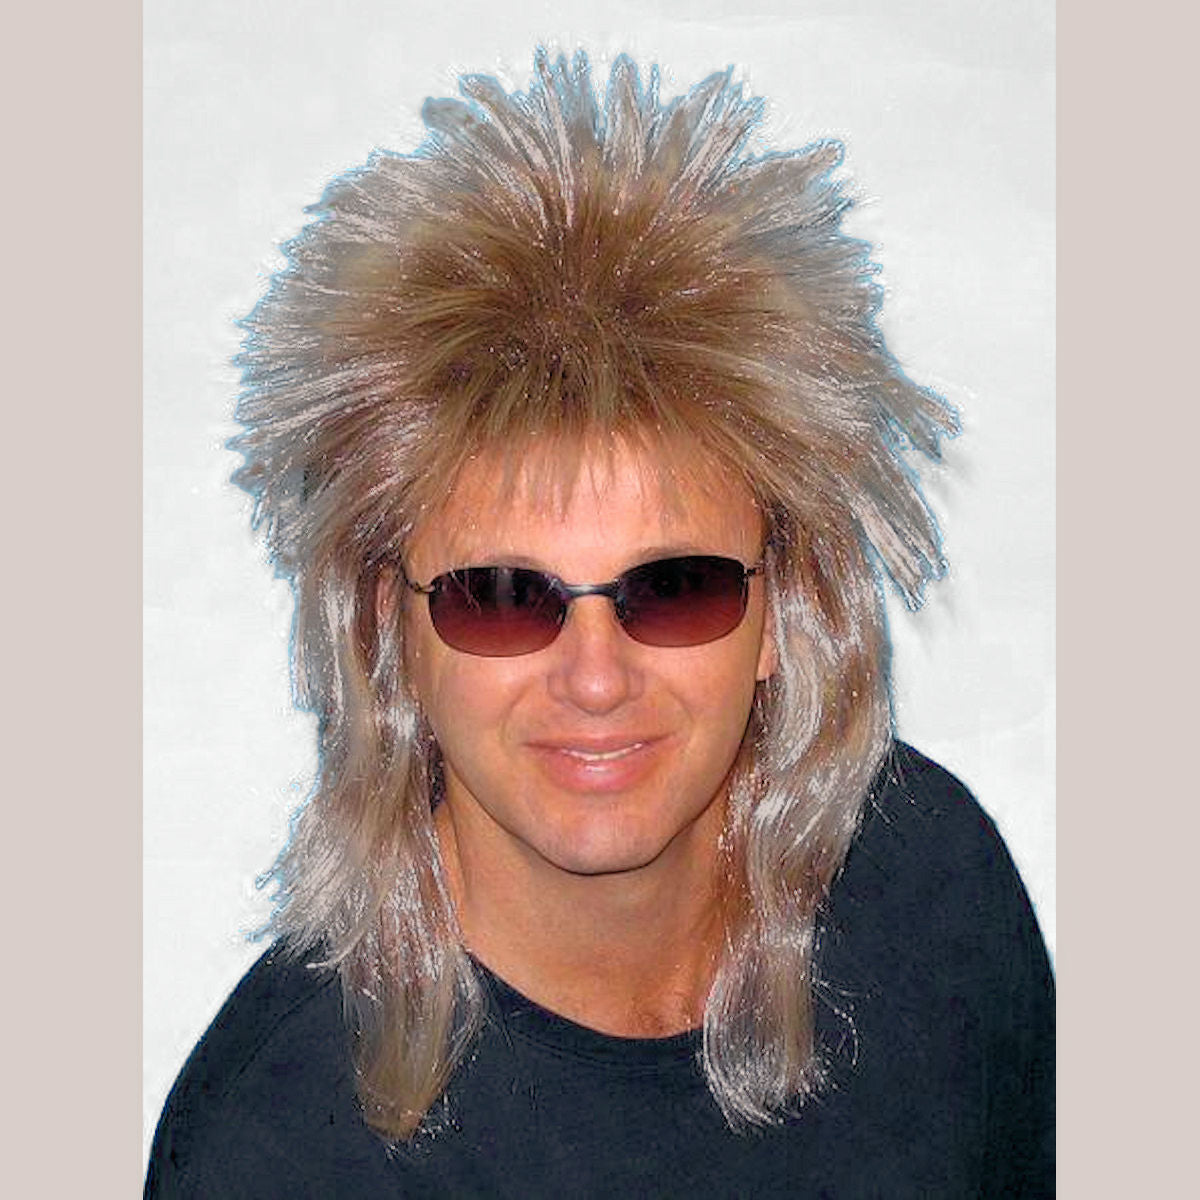 80's Spiky Poita Blonde Mullet Rod Stewart WIG Men's Rock Star Costume Wig